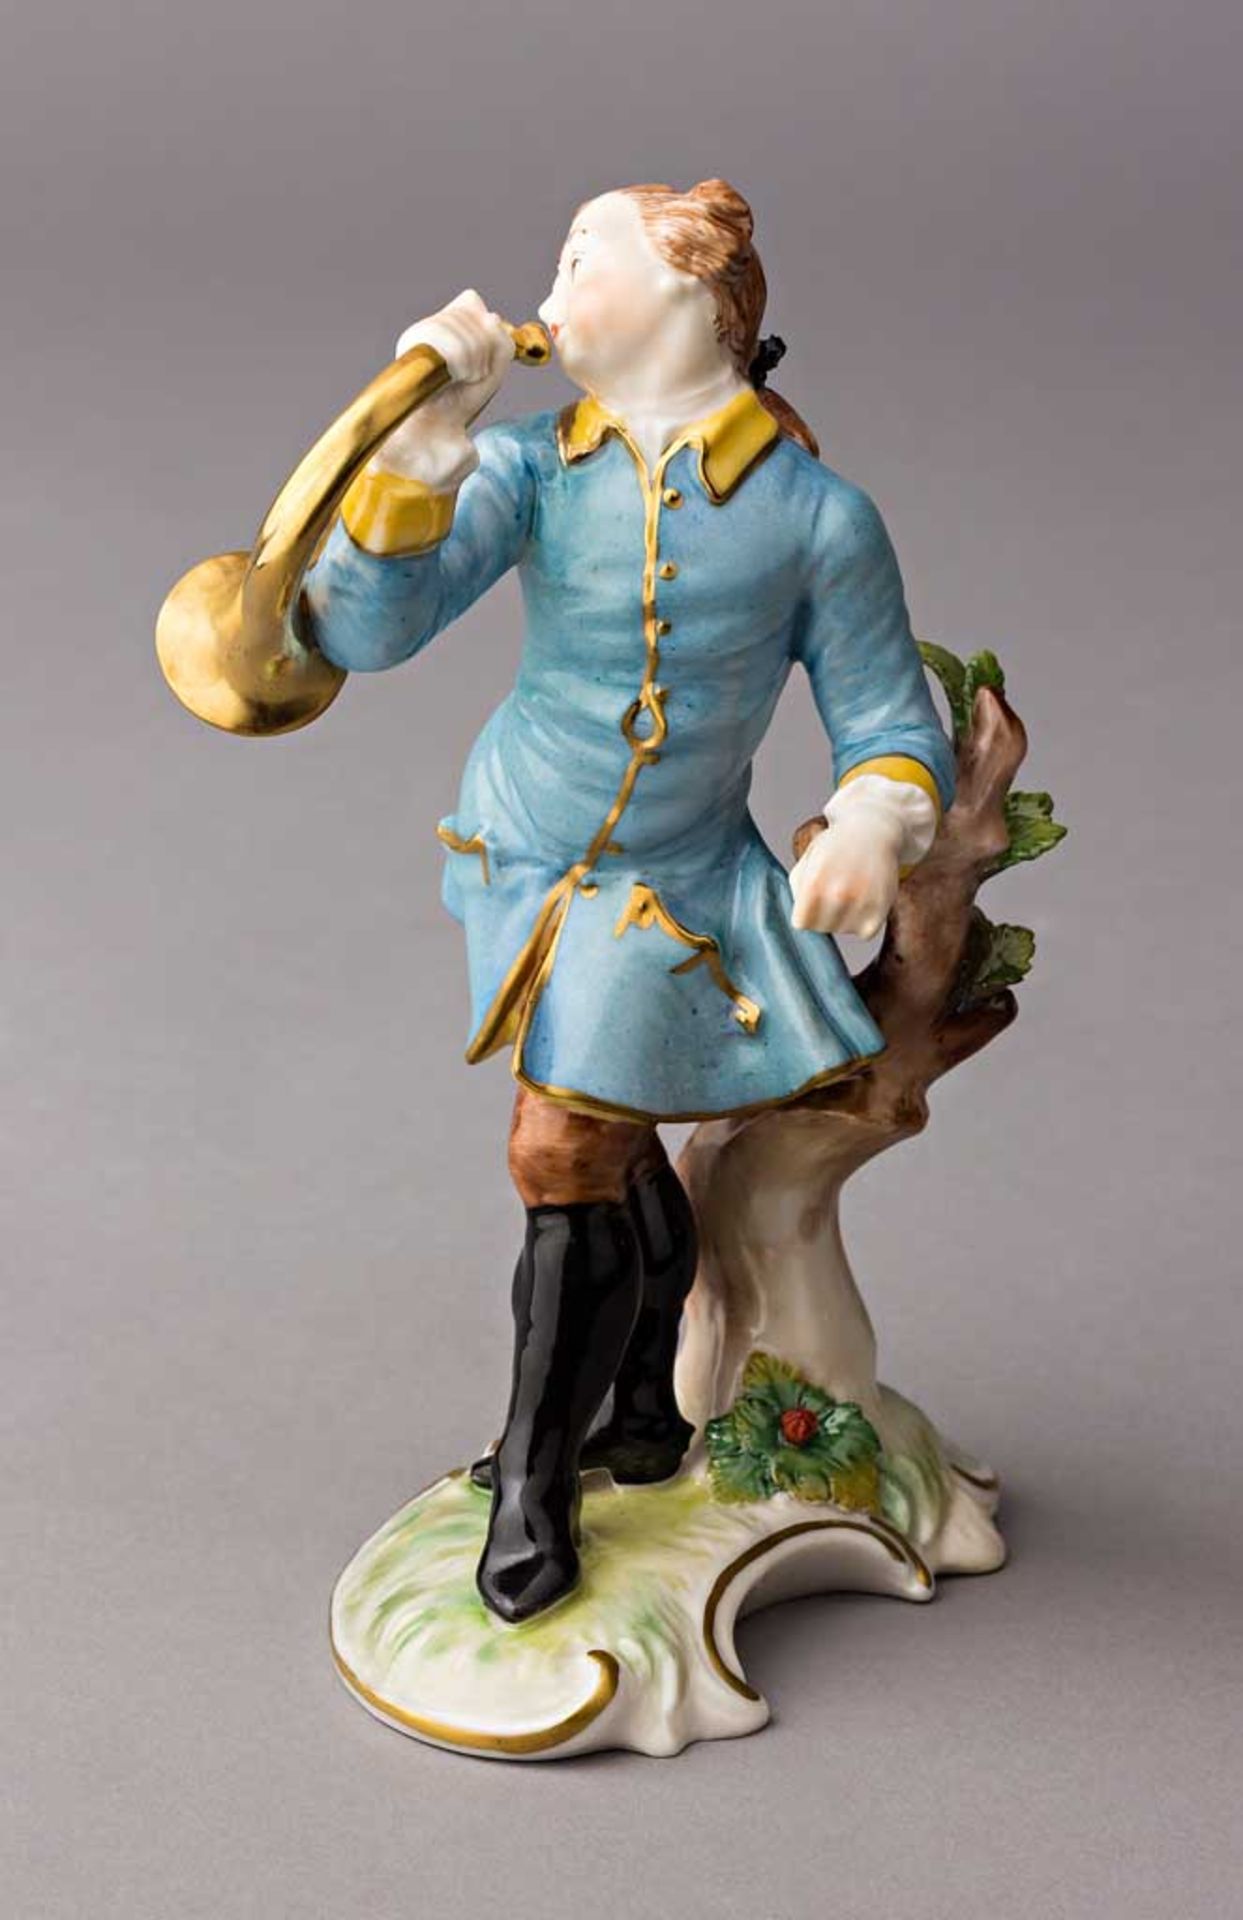 Hornist auf Landschaftssockel. Polychrom staffierte Figurine. Nymphenburg, nach 1900. H 16 cm